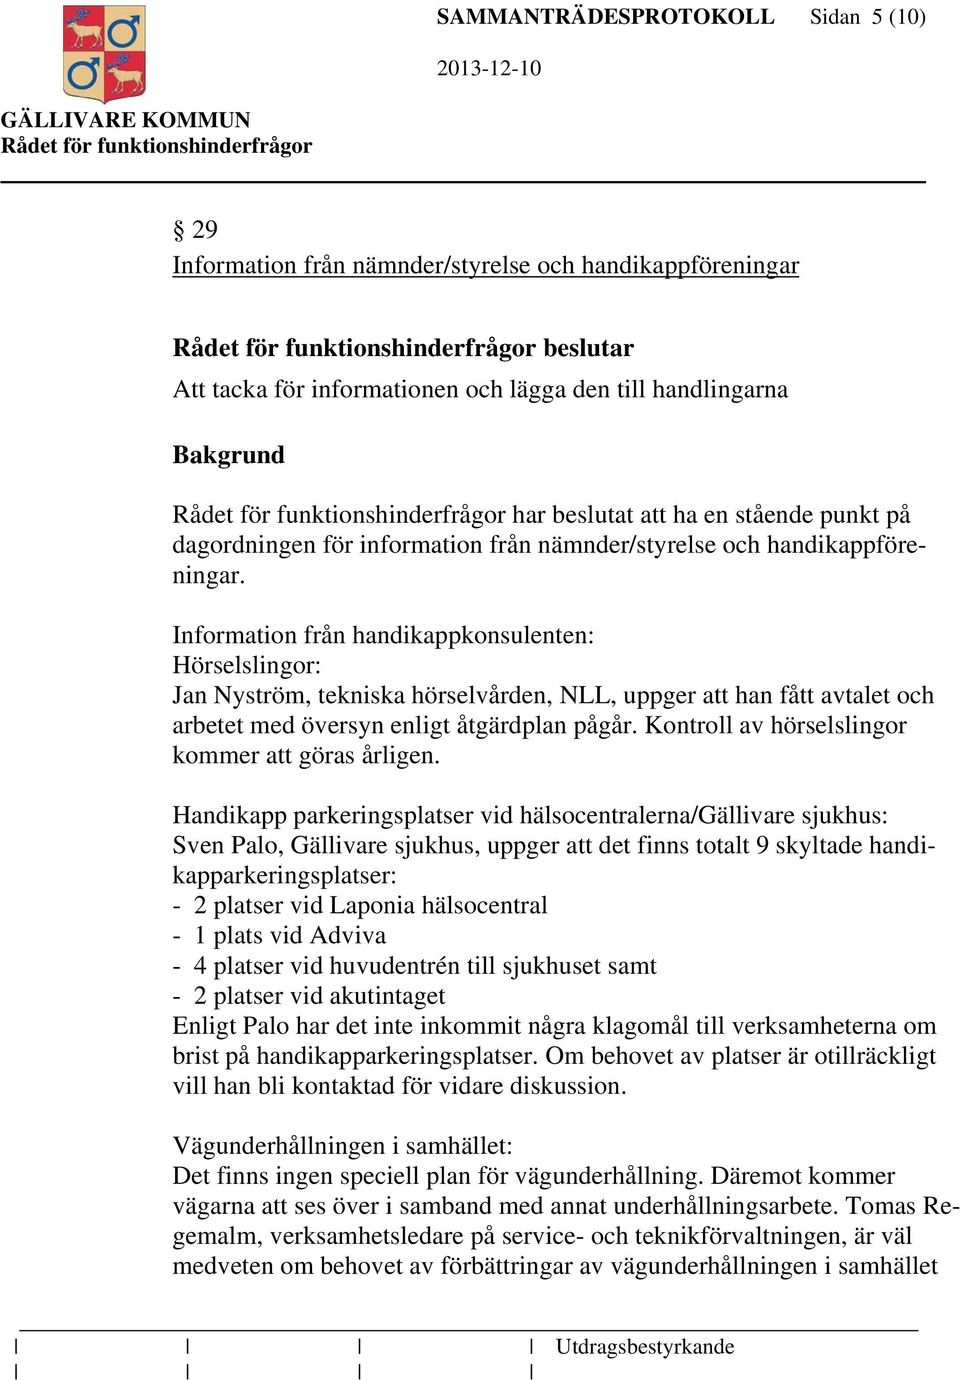 Information från handikappkonsulenten: Hörselslingor: Jan Nyström, tekniska hörselvården, NLL, uppger att han fått avtalet och arbetet med översyn enligt åtgärdplan pågår.